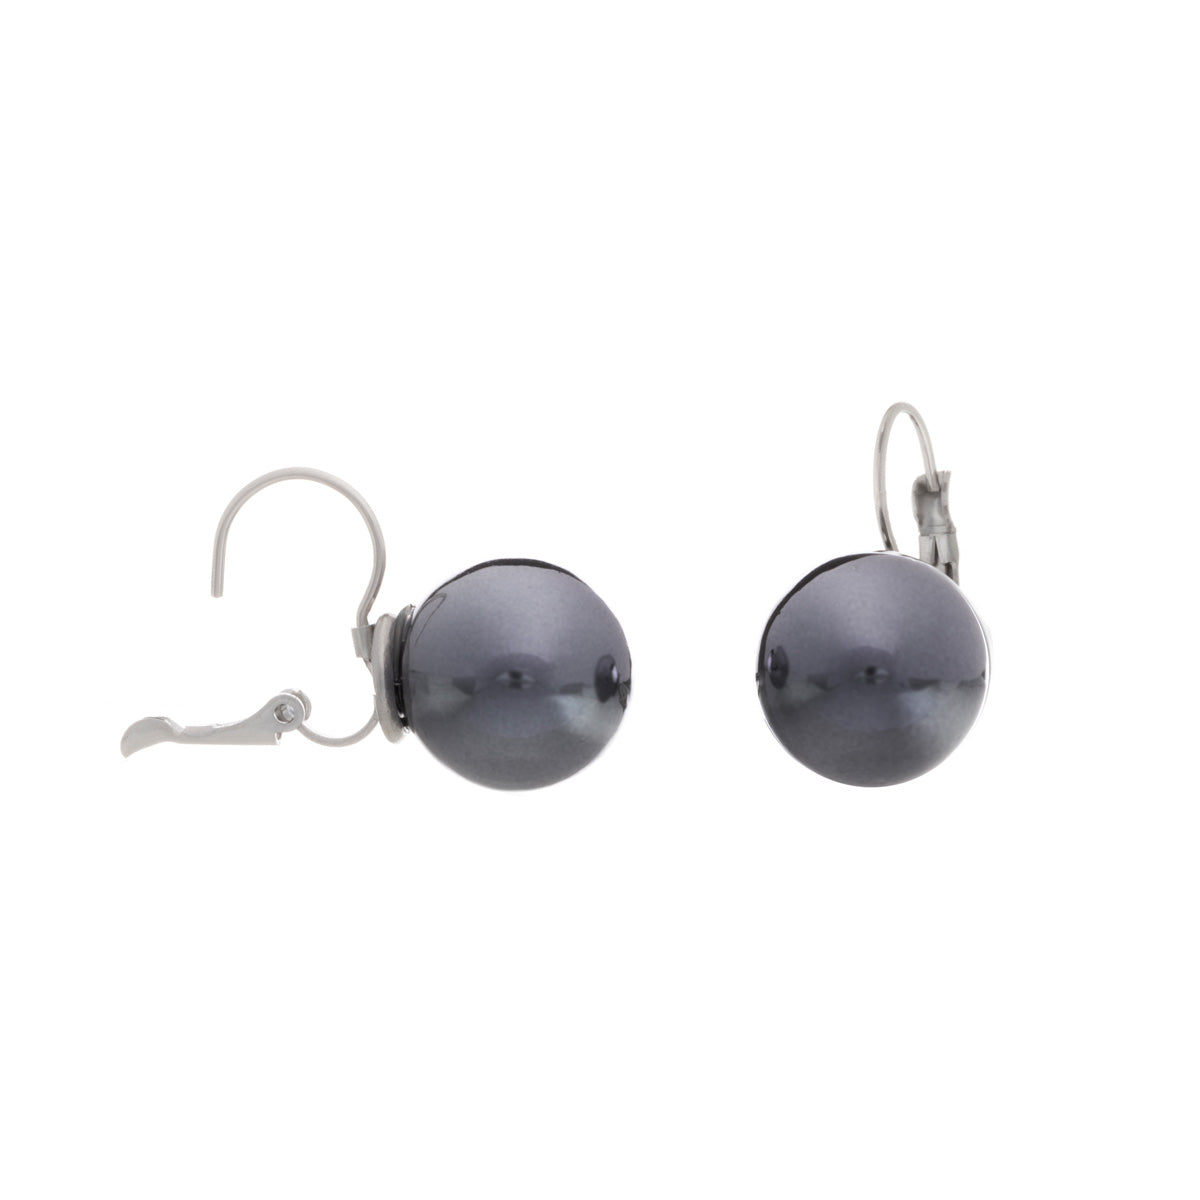 Hooked ball earring (steel)